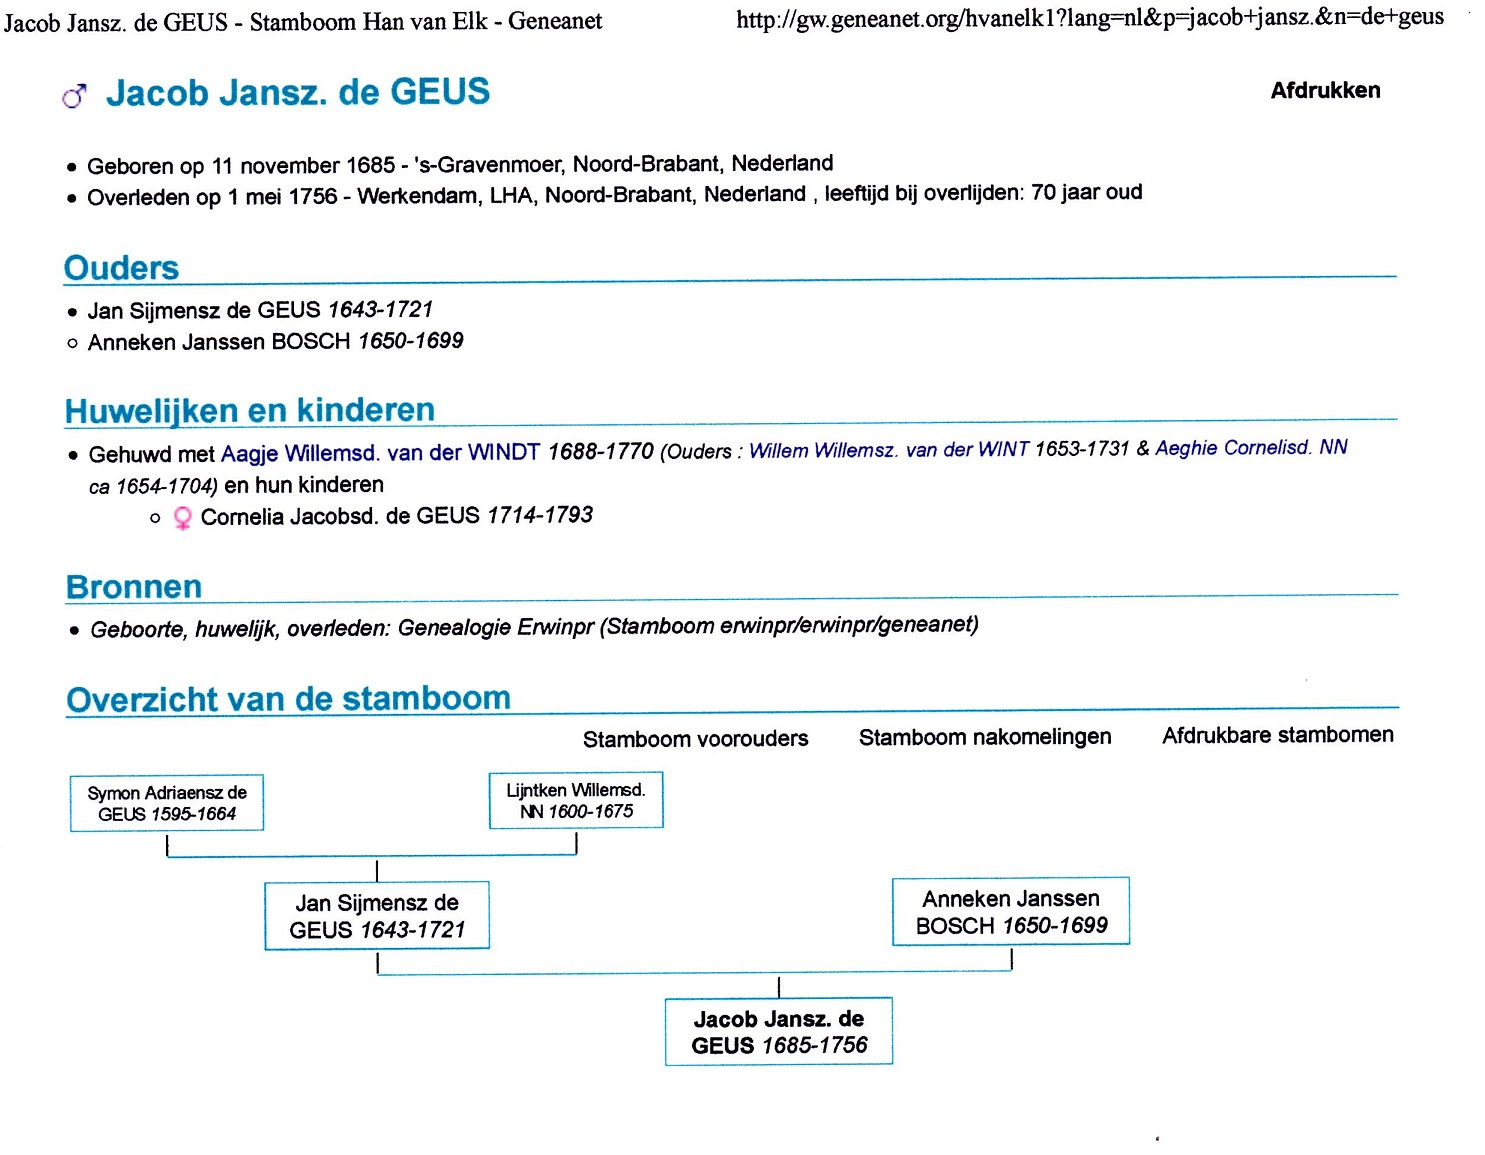 1685-11-11 Jacob Jansz de Geus